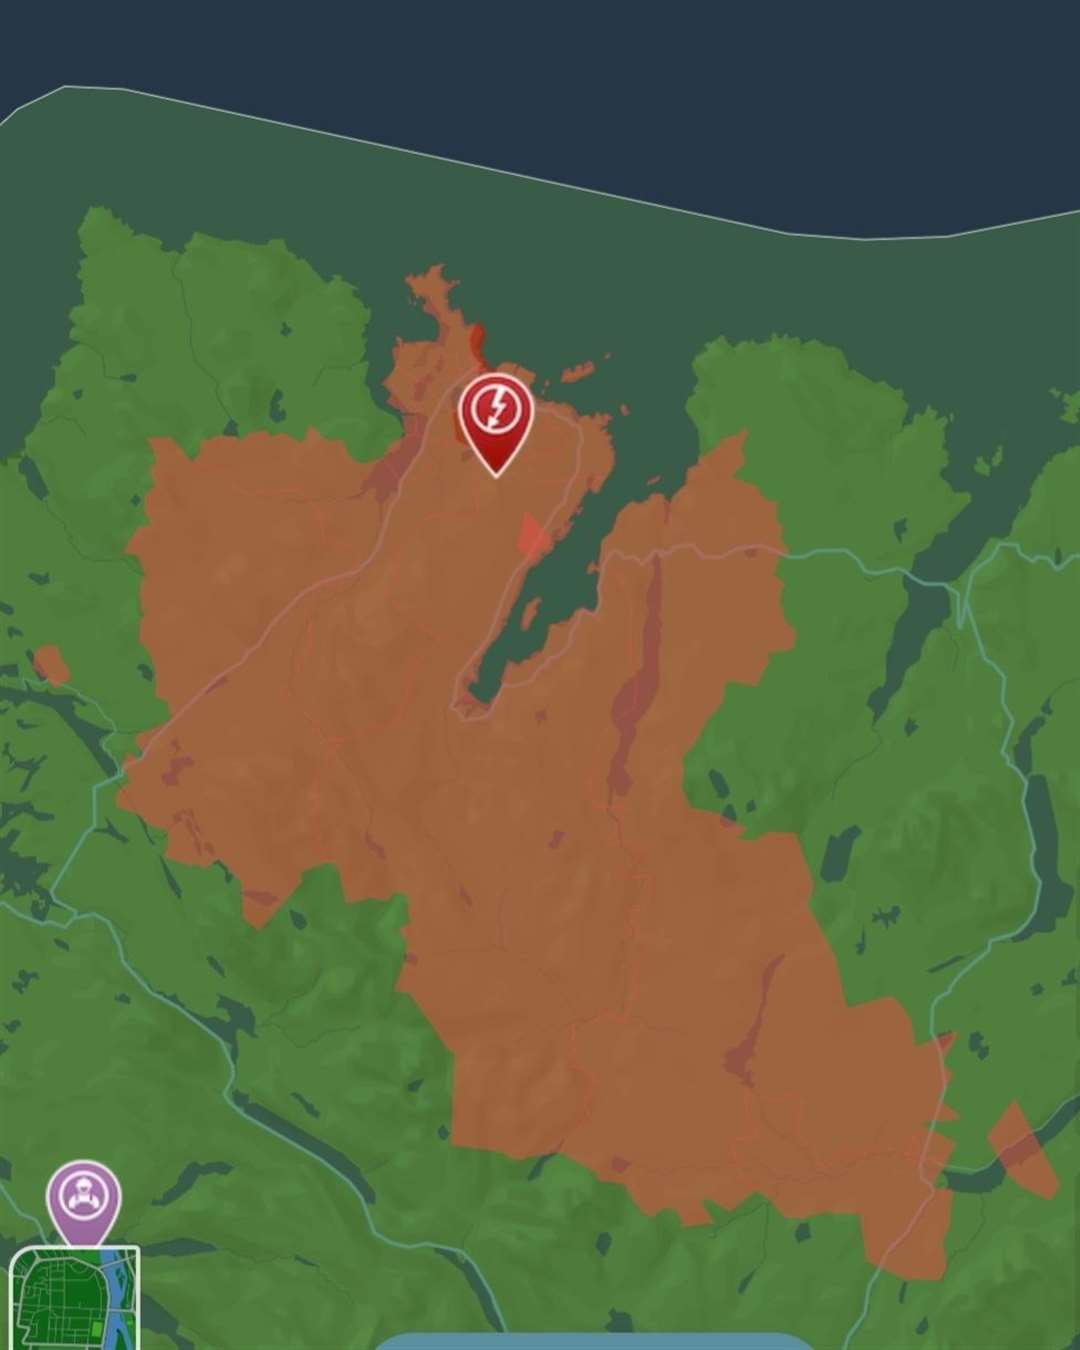 Power cut in Loch Eriboll area